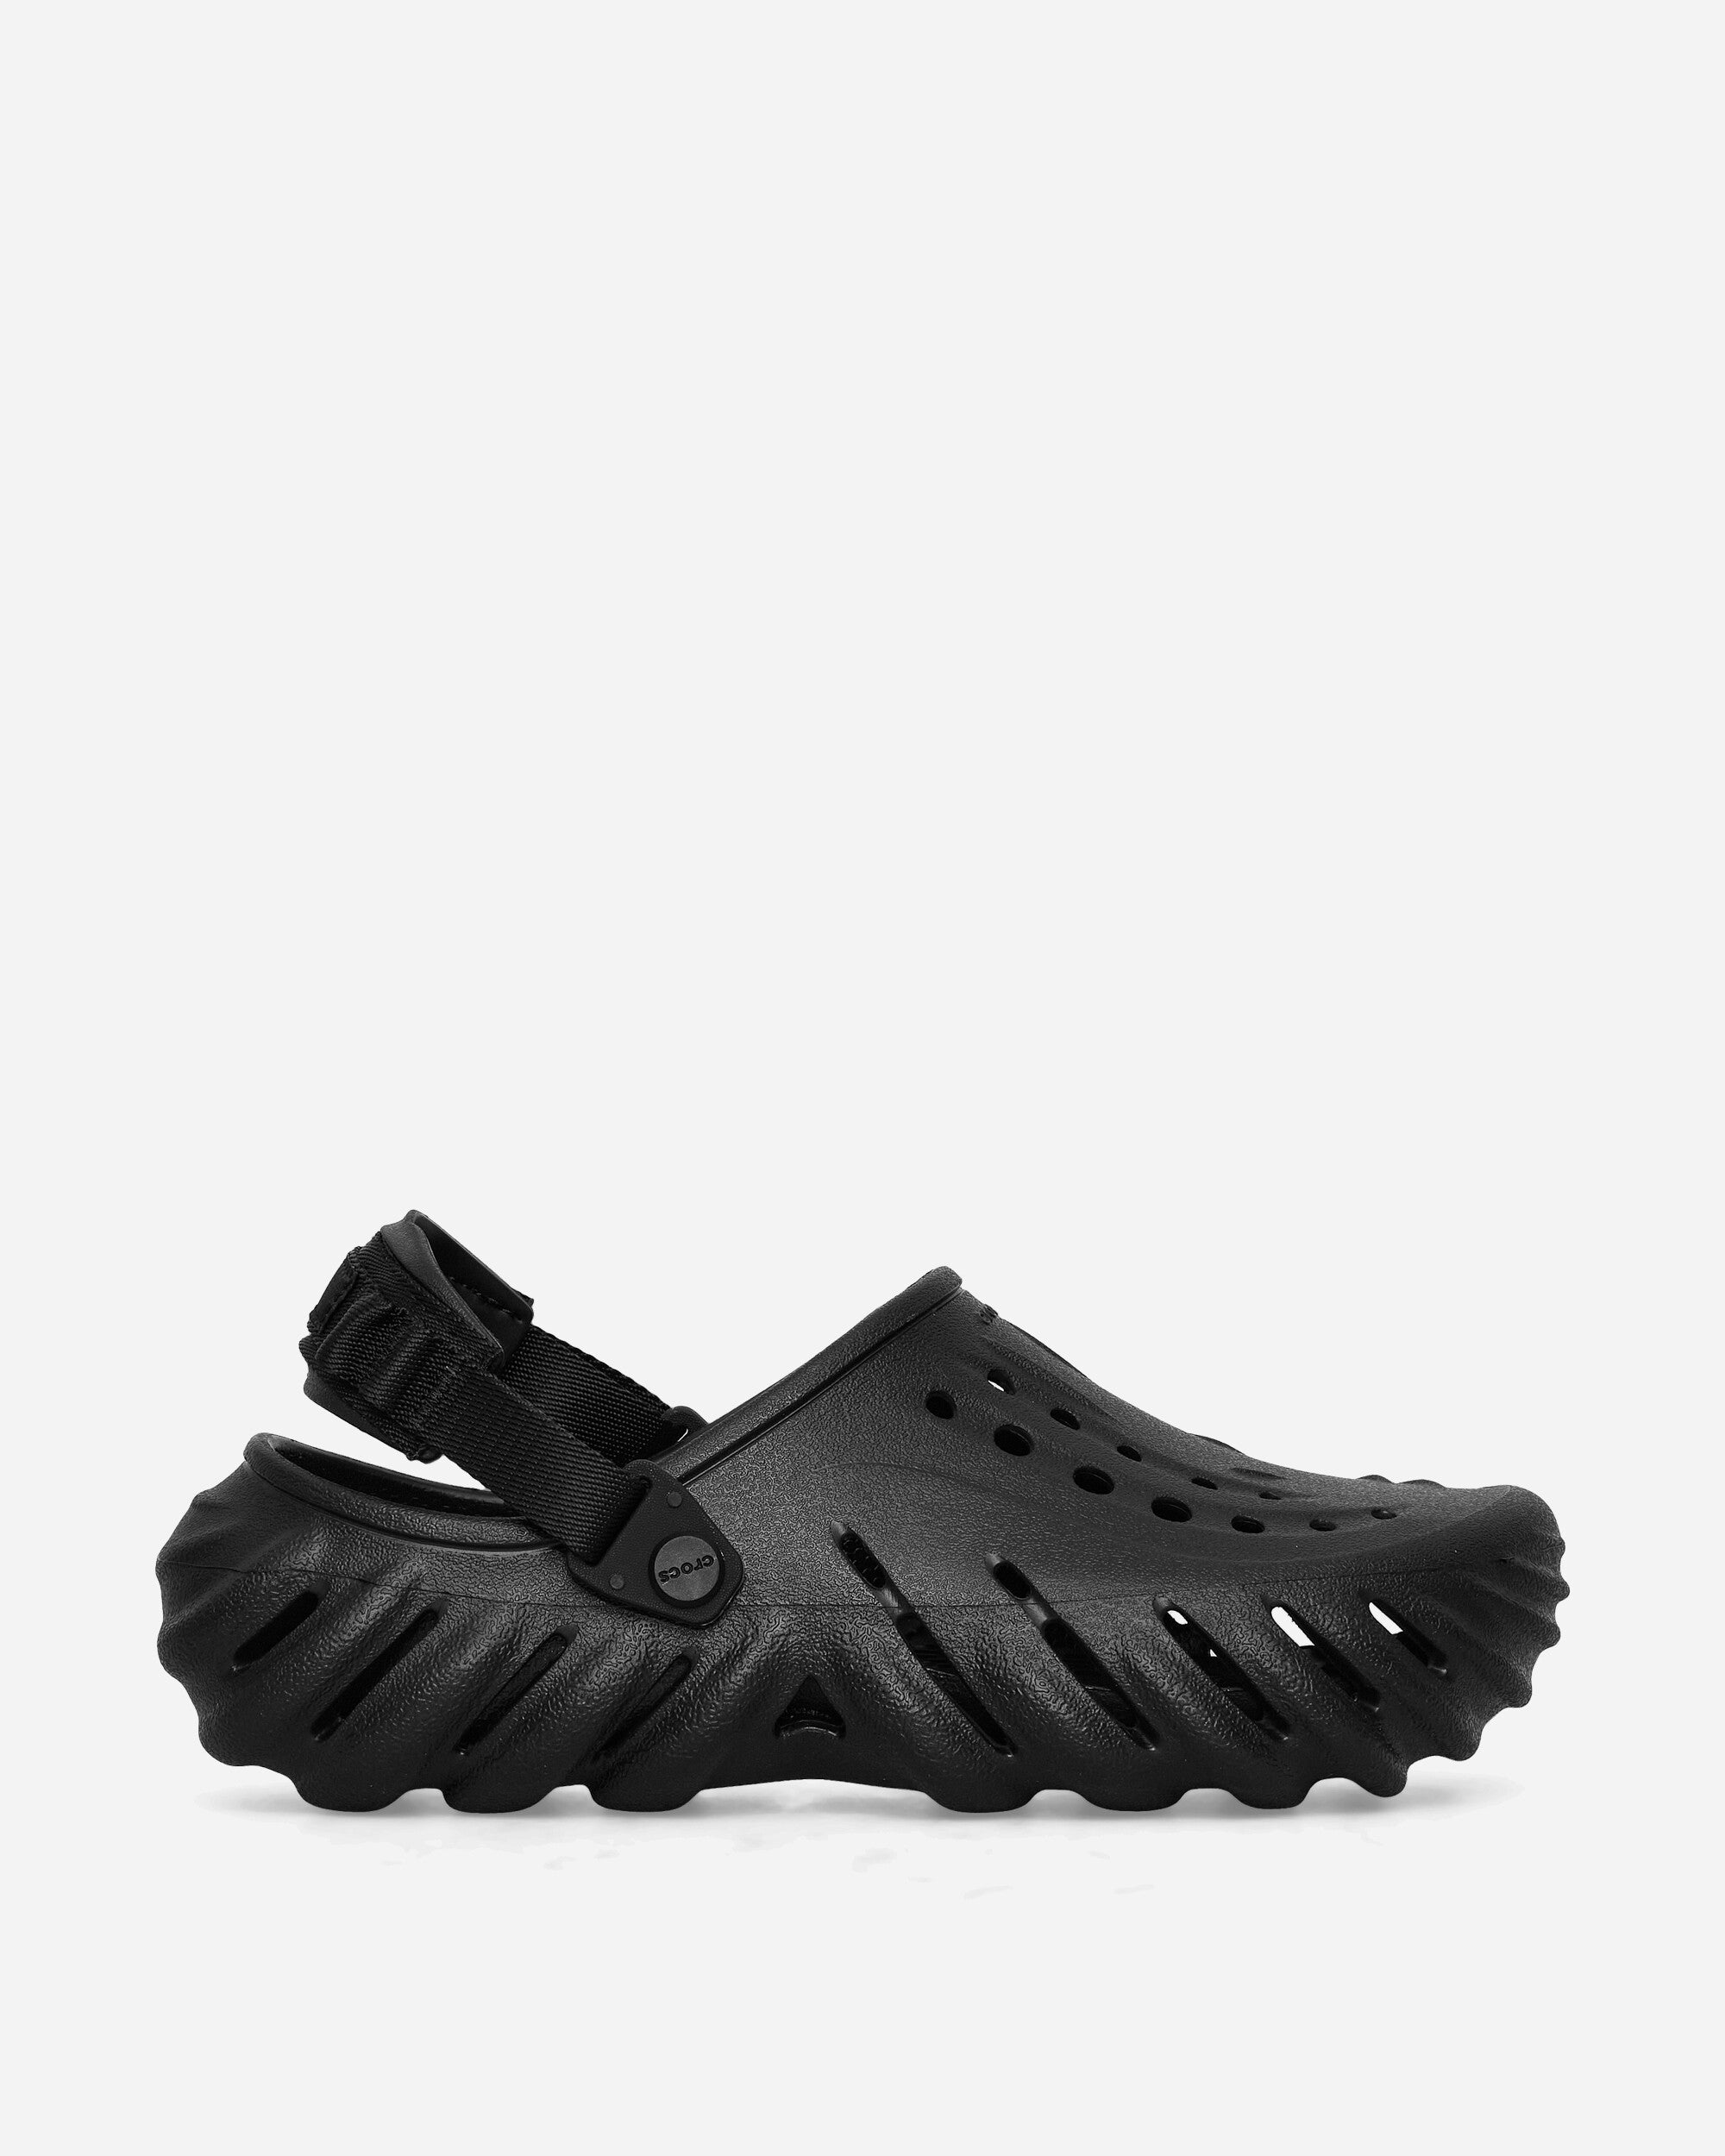 Crocs Crocs Echo Clog Black Sandals and Slides Sandals and Mules 207937W BLK